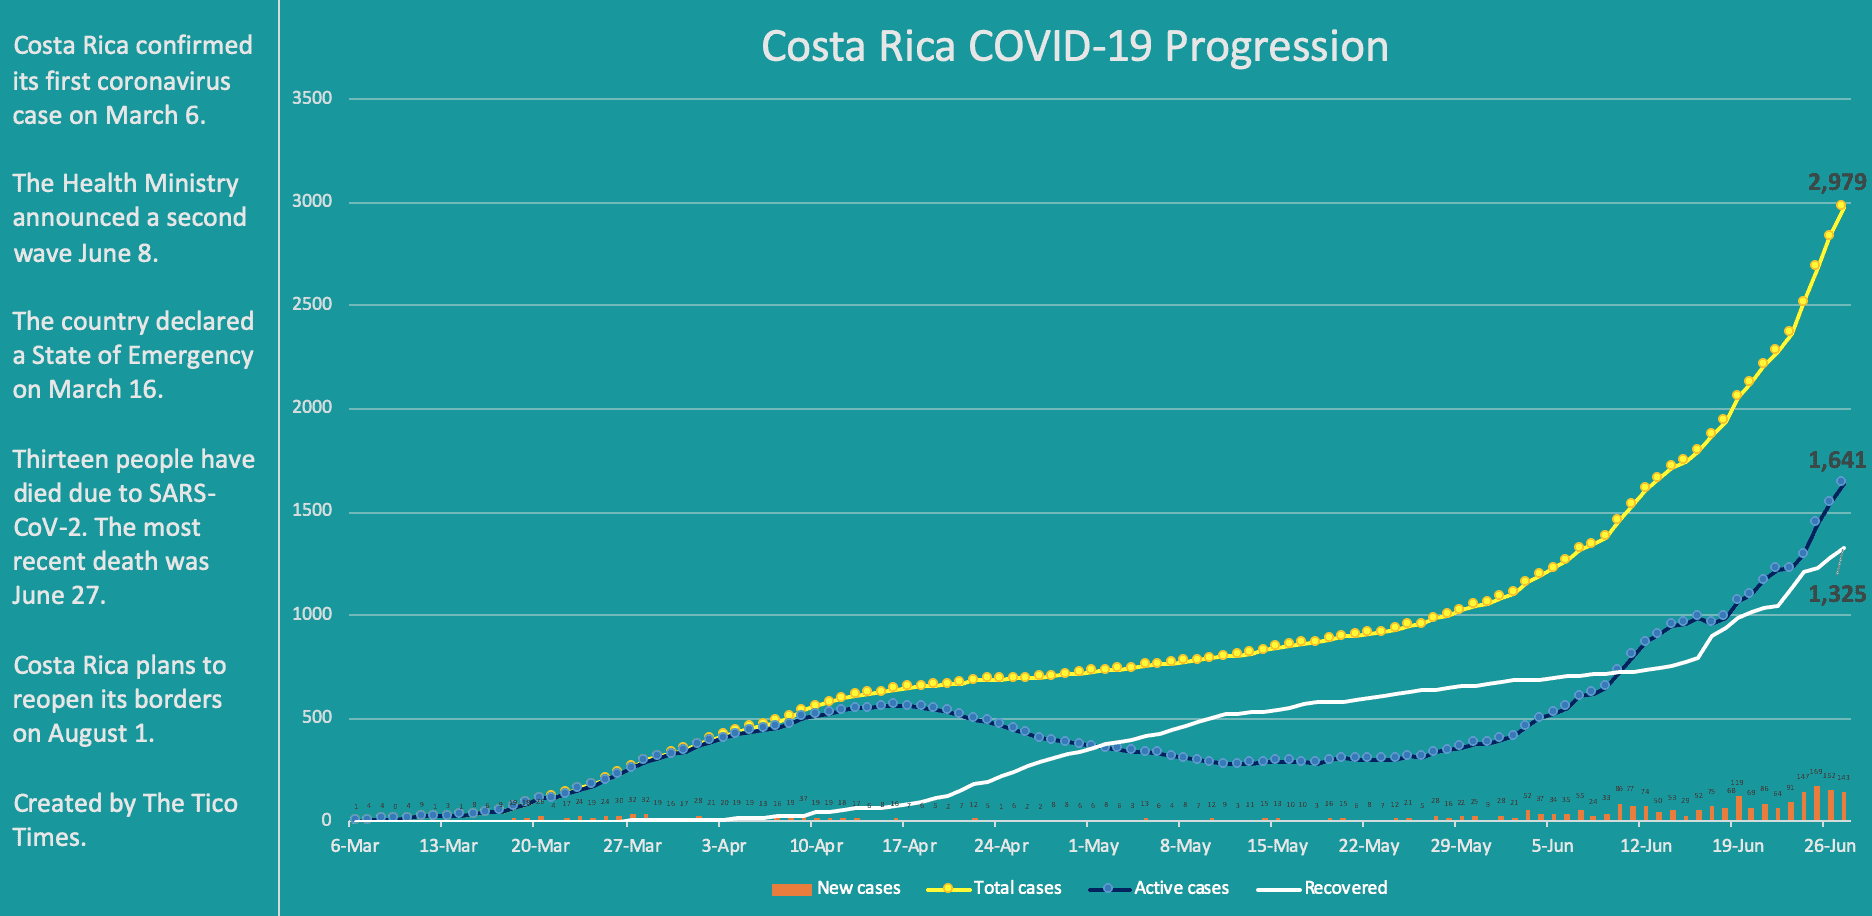 Costa Rica coronavirus data for June 27, 2020